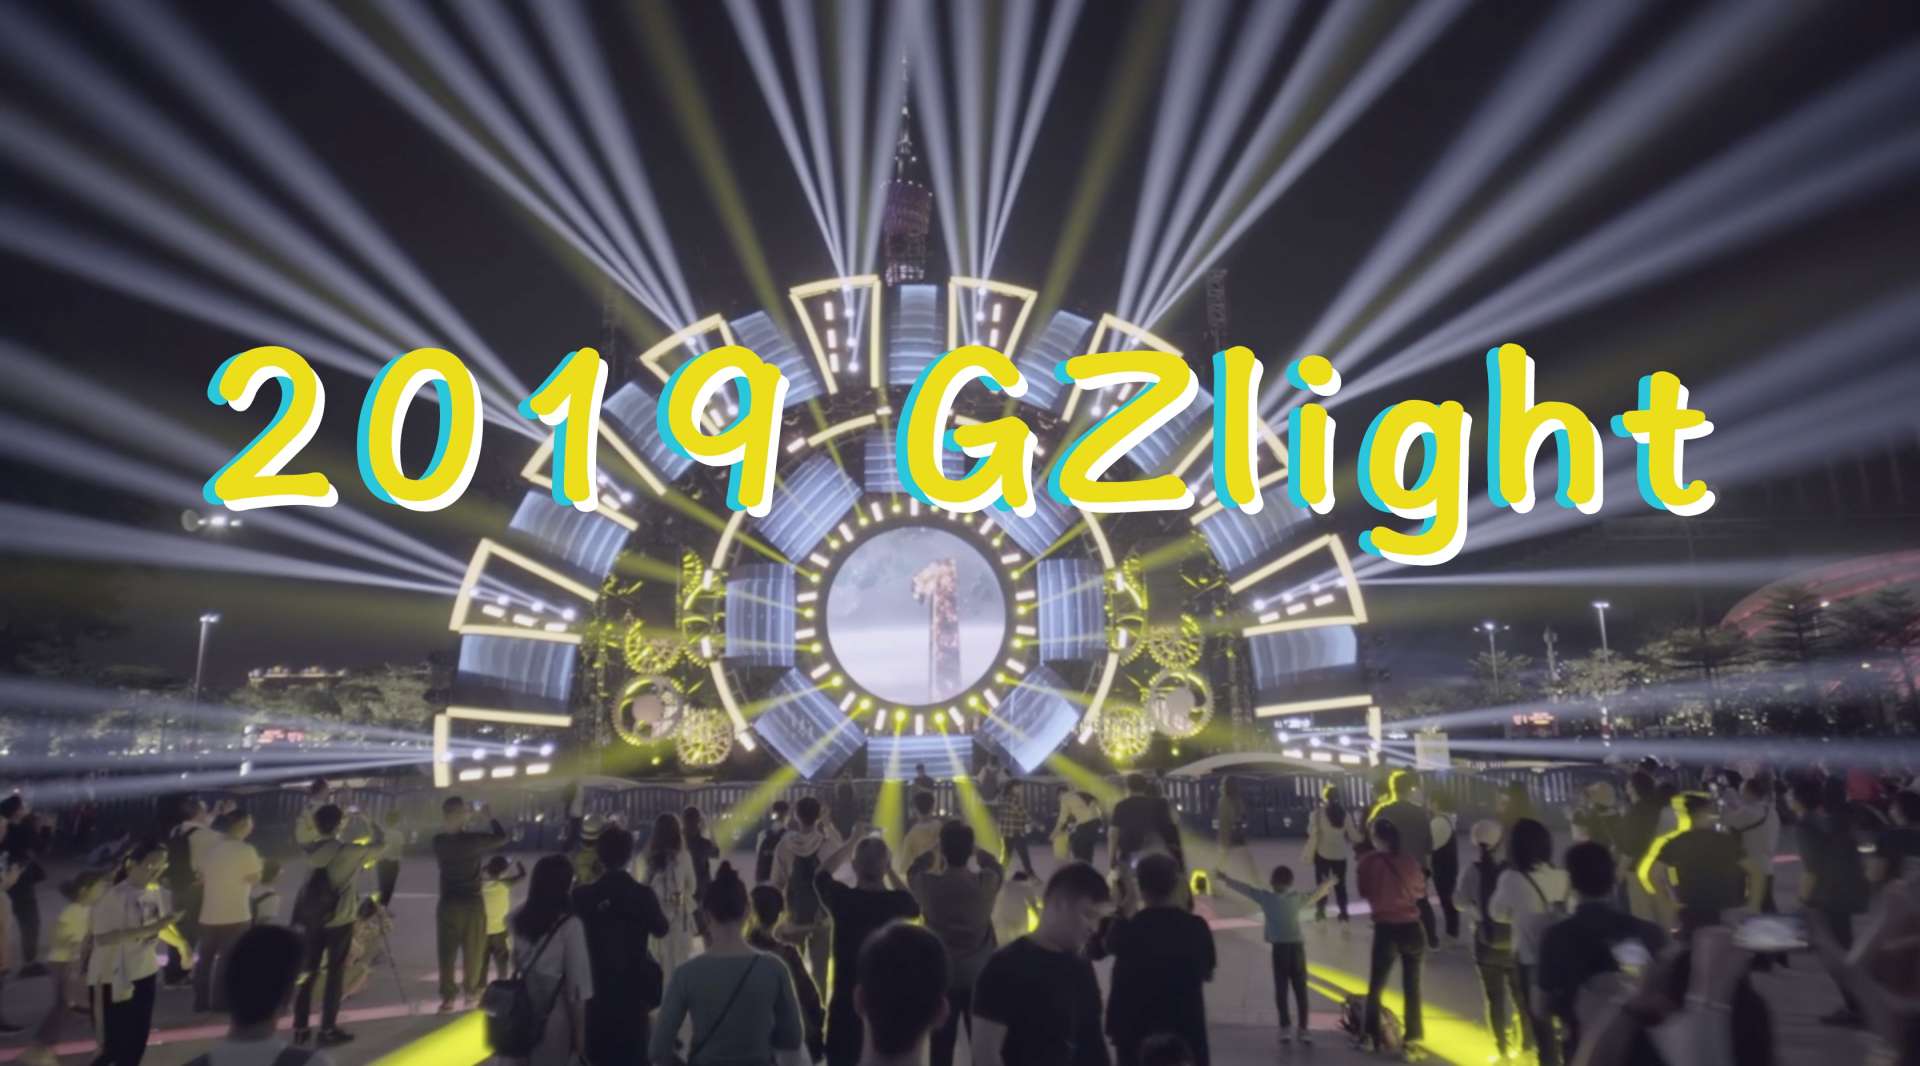 《2019 GZlight》2分20秒 带你去看场广州灯光秀